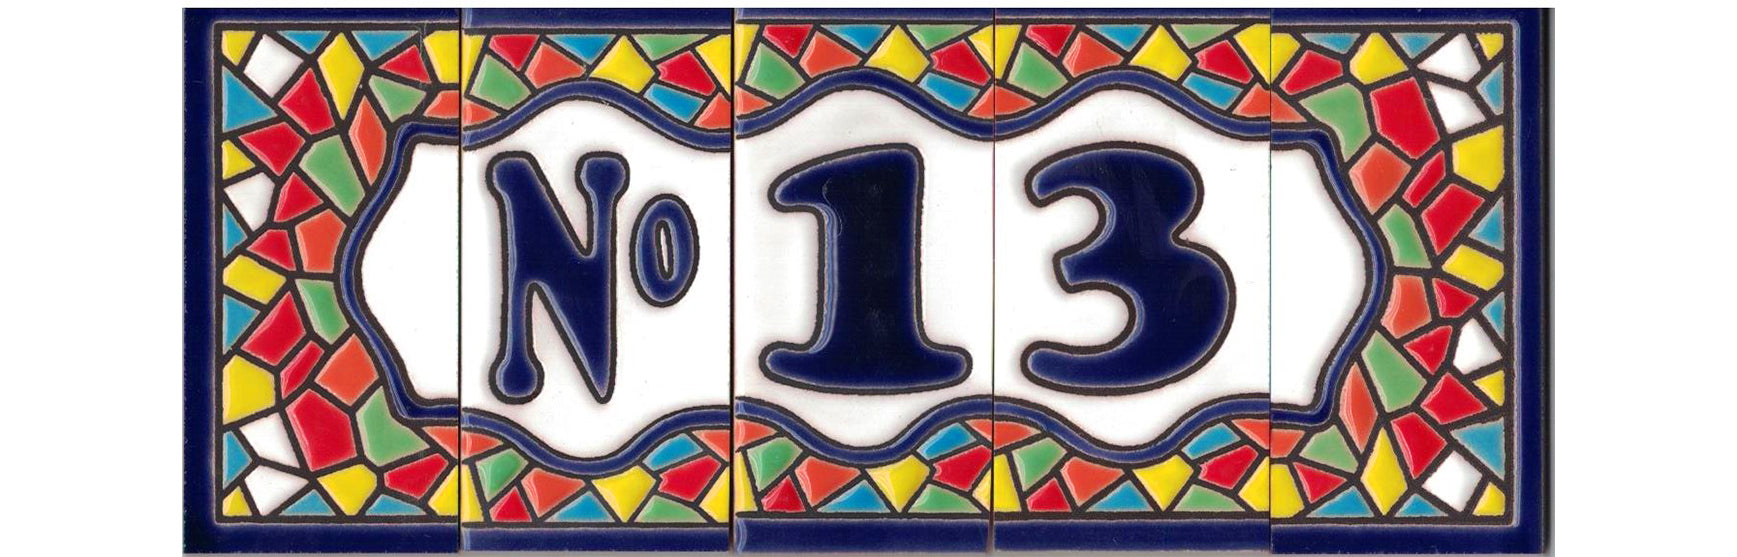 Entrega al día siguiente gratis Dibujo Corazón Modelo Mini Mosaico 3,5 cms  x 7,5 cms Pintados a Mano con la técnica de la cuerda seca TORO DEL ORO Números  para casas Números